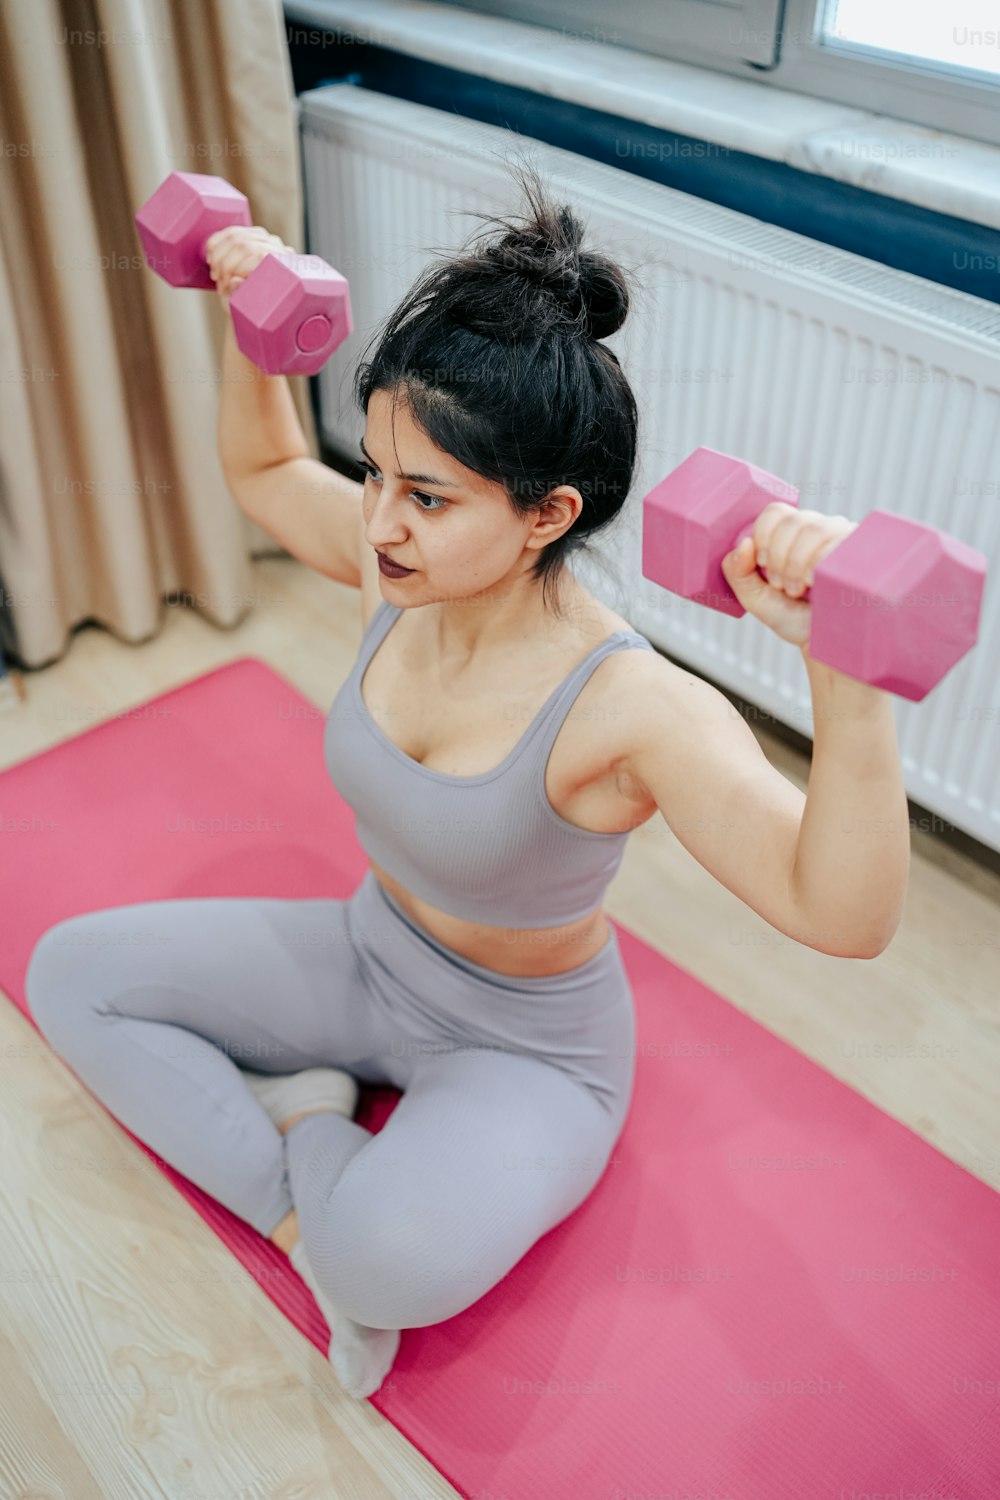 Una mujer está haciendo ejercicios con mancuernas rosadas